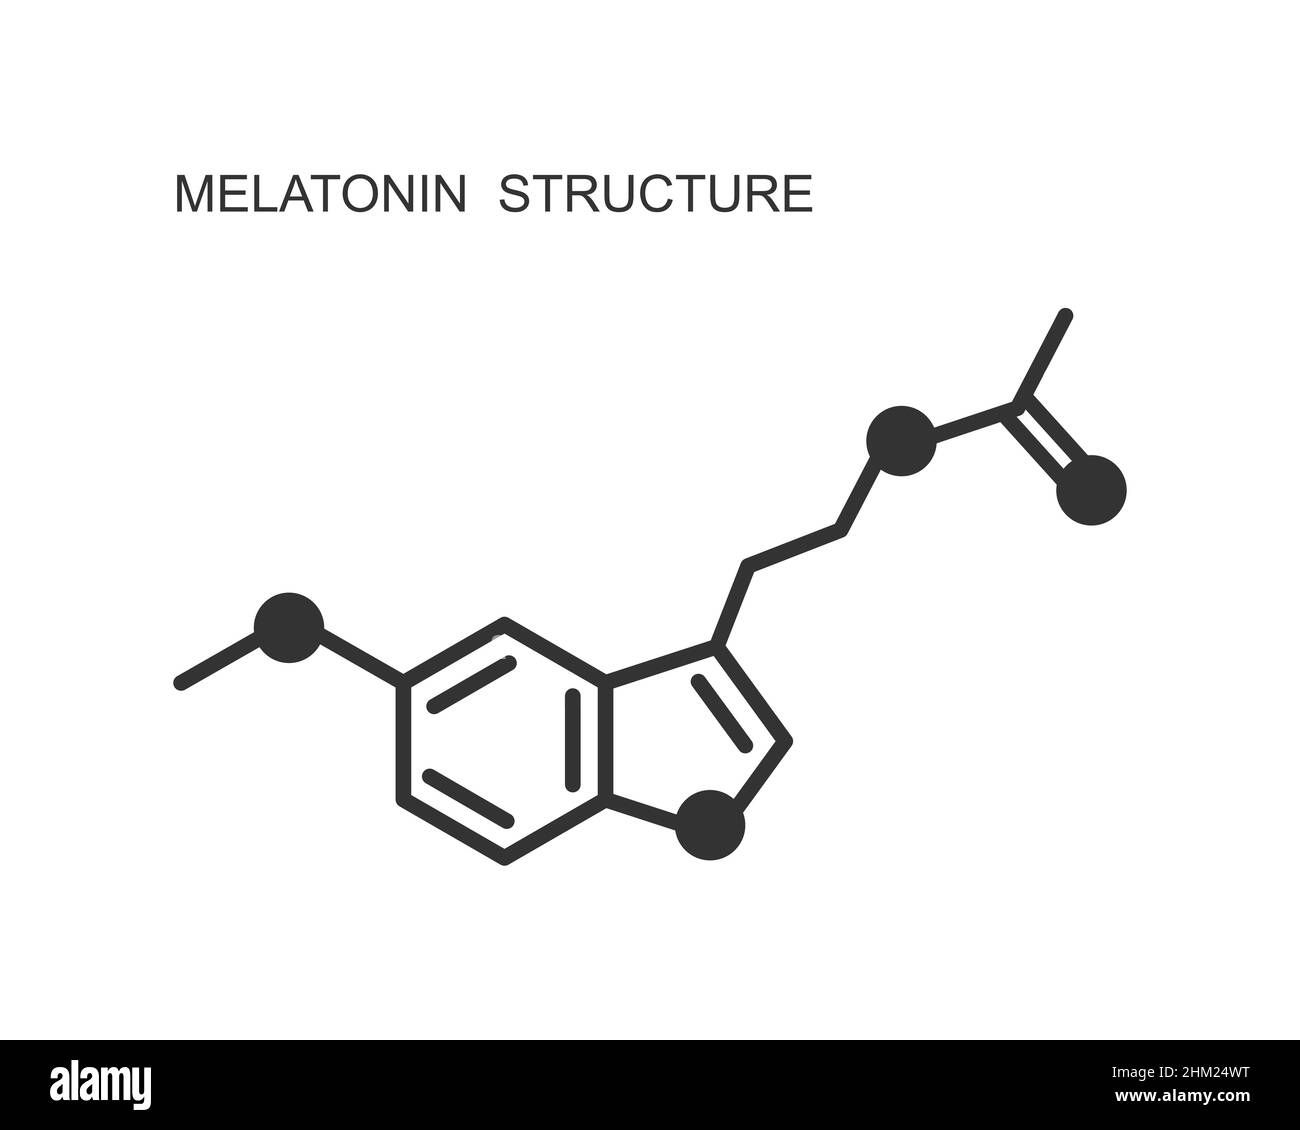 Melatonin-Symbol. Somnolenzhormon für Jetlag, Schlaflosigkeit, zirkadiane Rhythmusstörungen Therapie verwendet. Chemische Molekülstruktur. Schild für die Regelung des Schlafzyklus. Vektordarstellung Stock Vektor